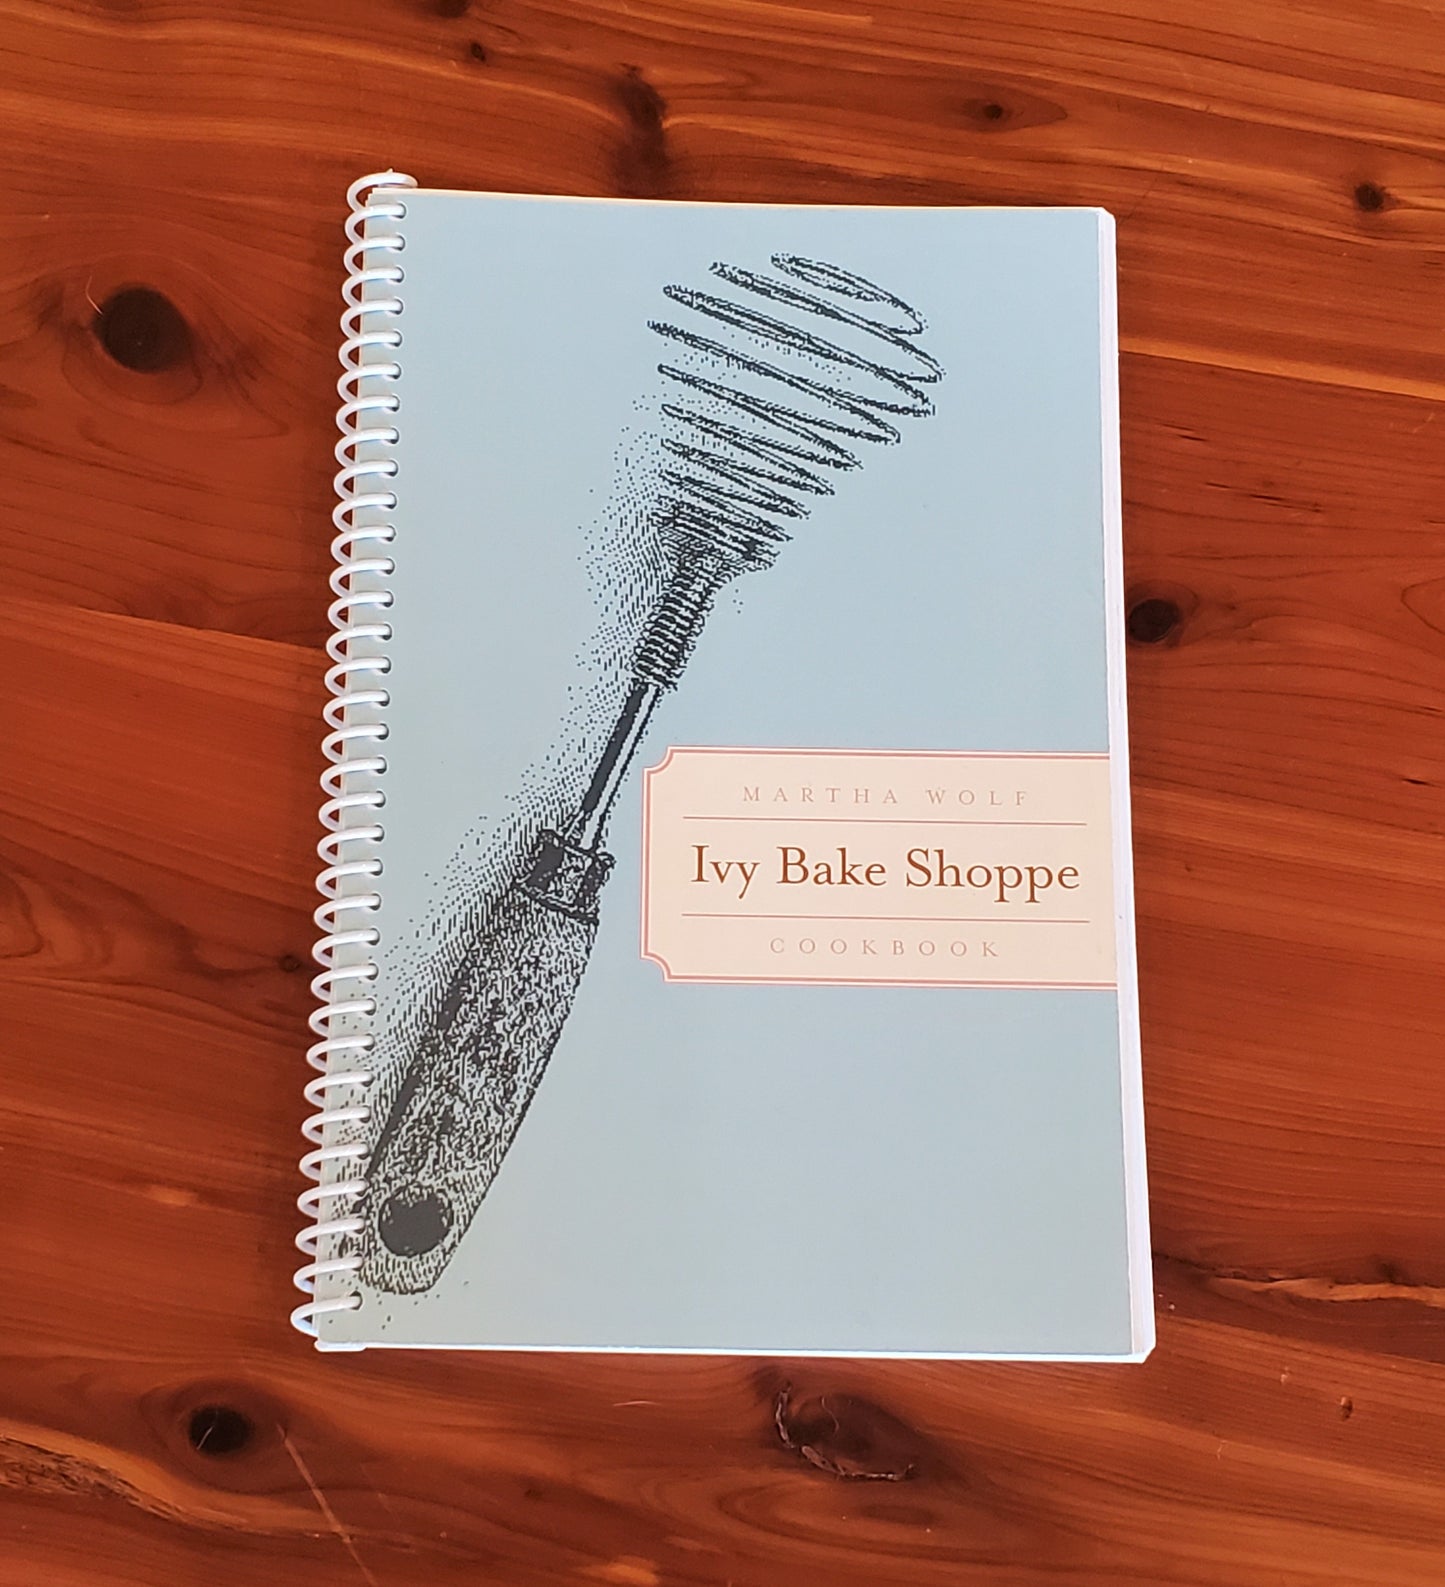 The Original Ivy Bake Shoppe Cookbook